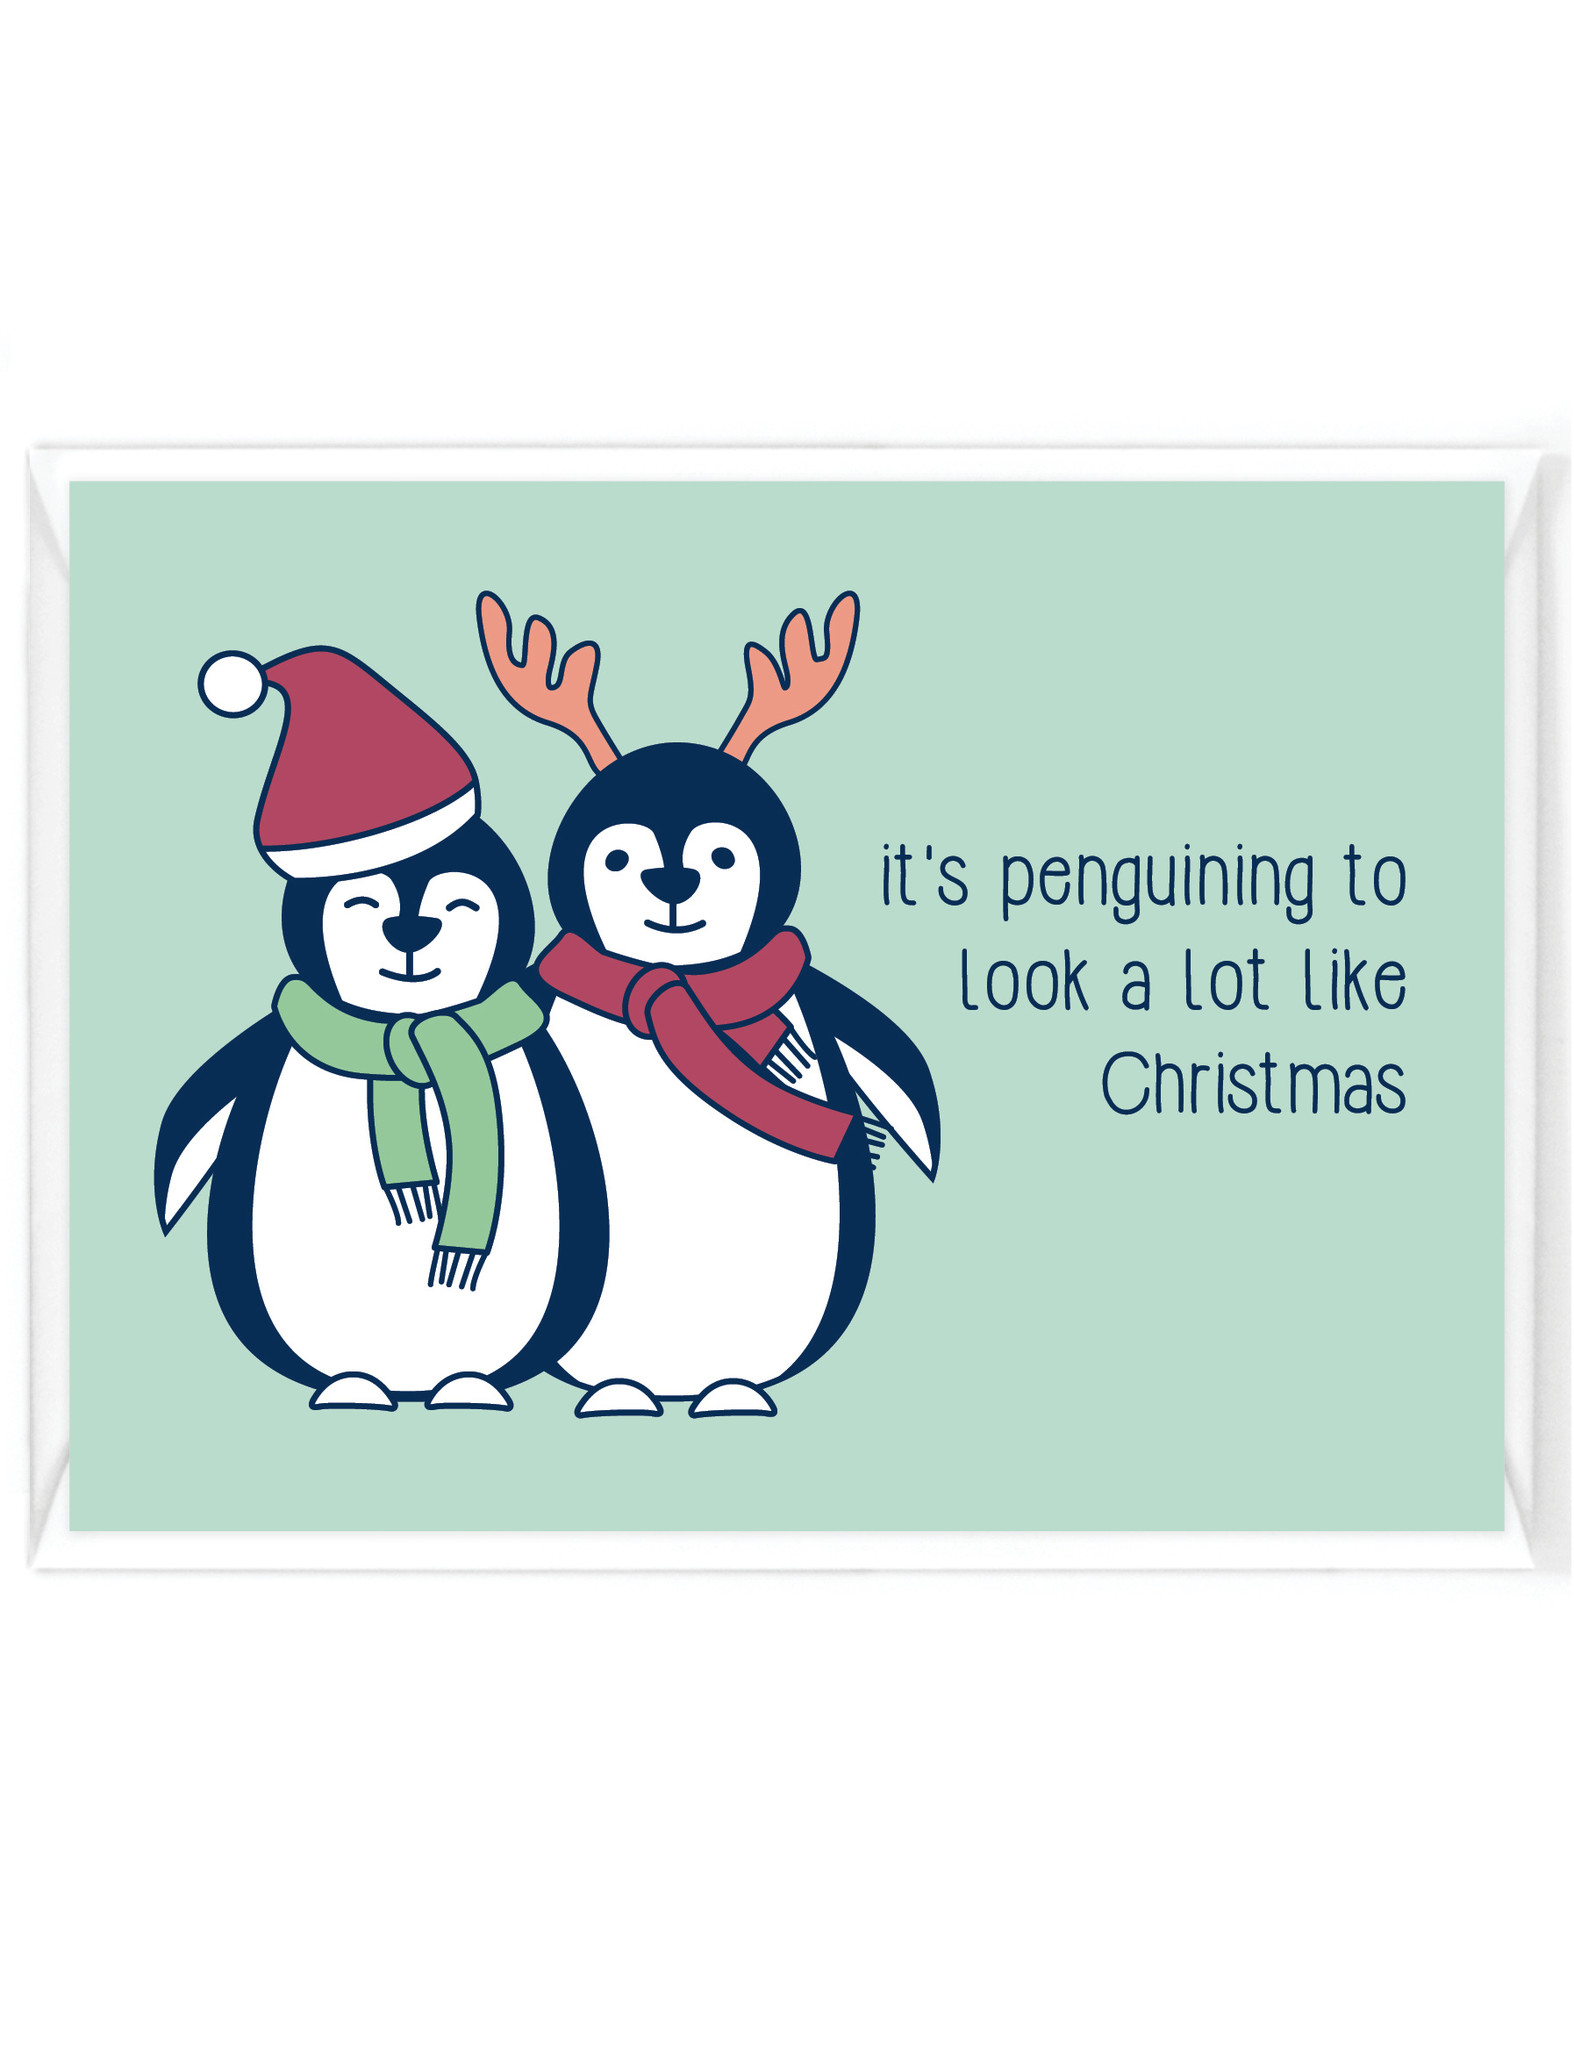 Wenskaart Kerst "It's penguining..." - humor